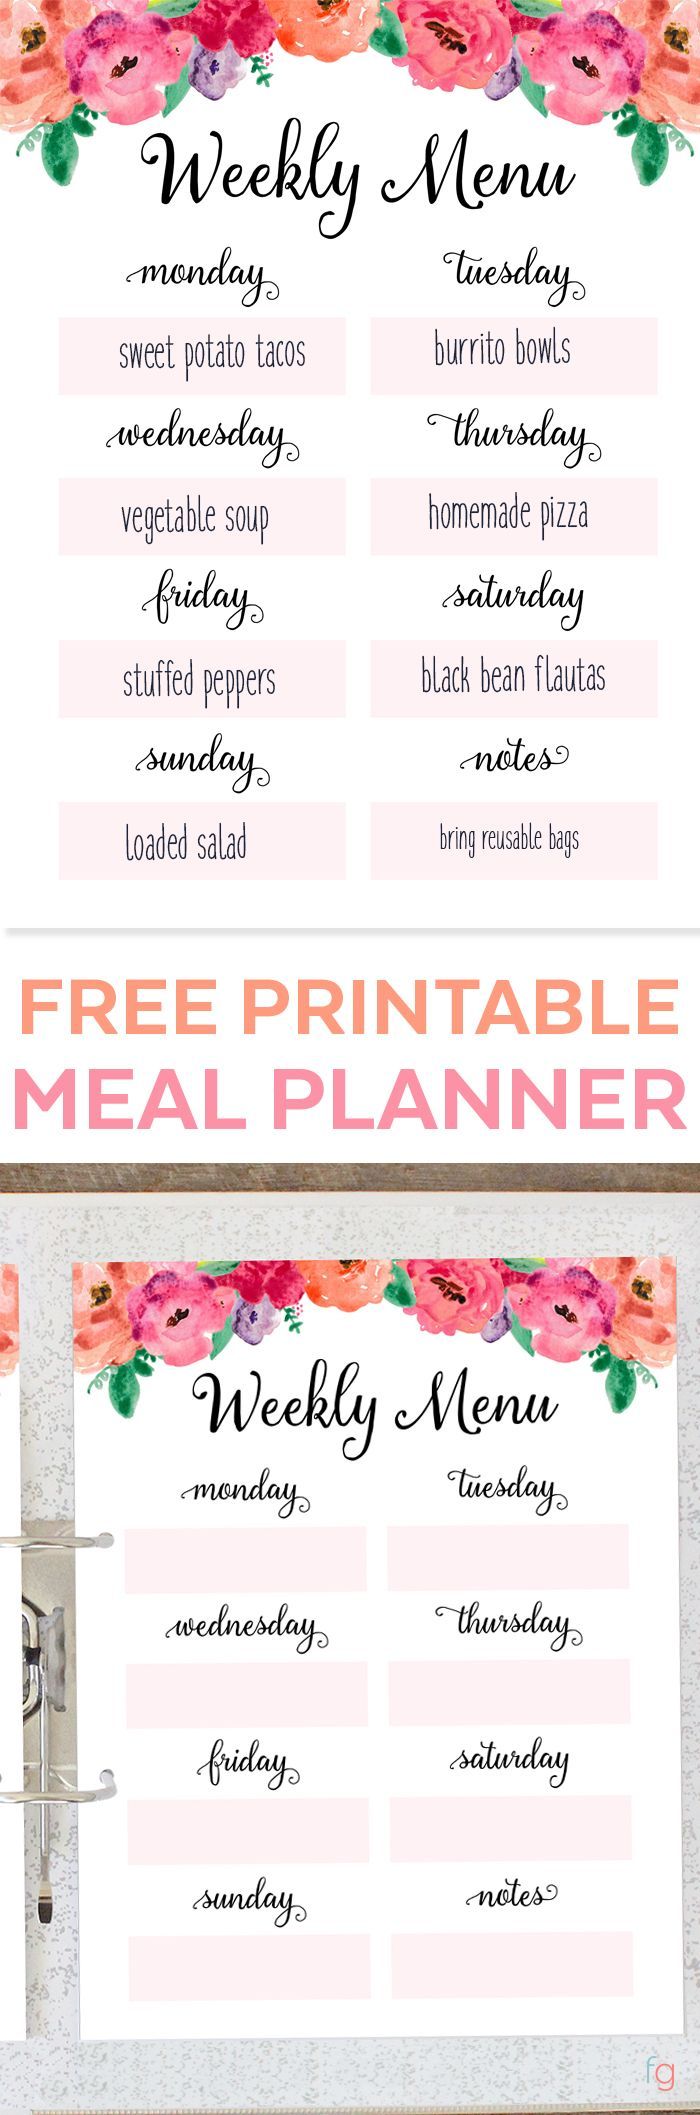 Weekly Meal Plan Printable Free Printable Weekly Meal Planner – Menu Plan Printable – Menu Planning Printable – Free Printables